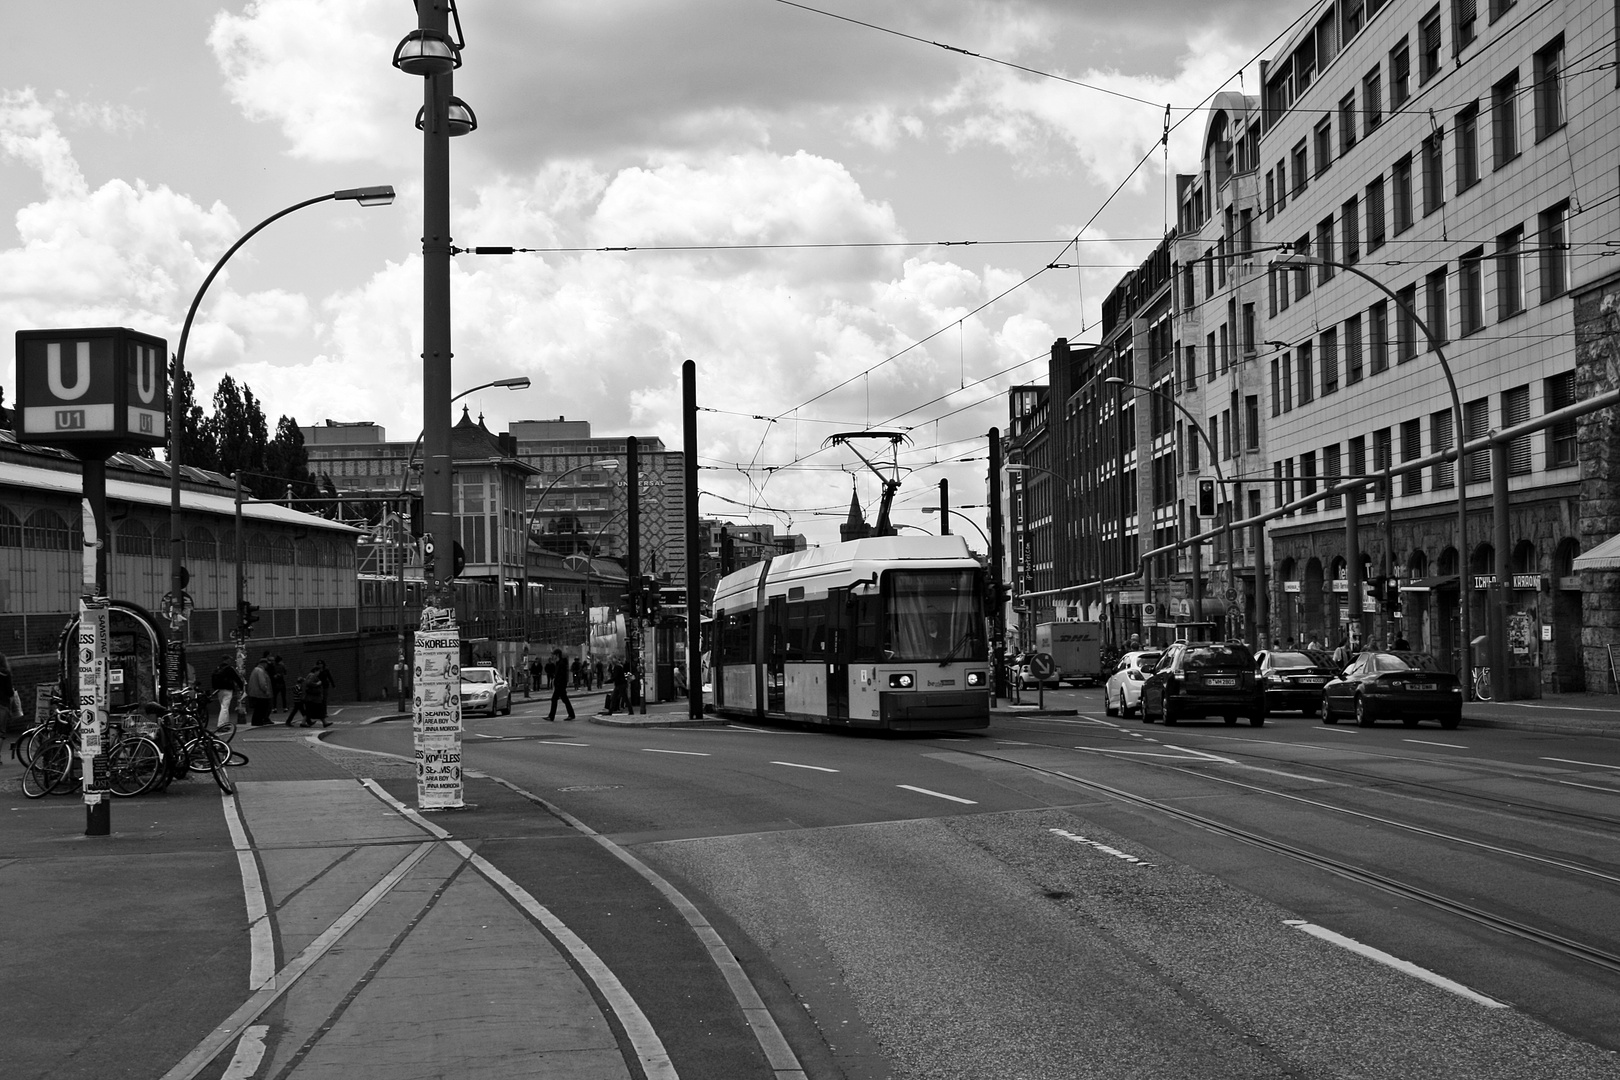 Straßenbahn in Berlin